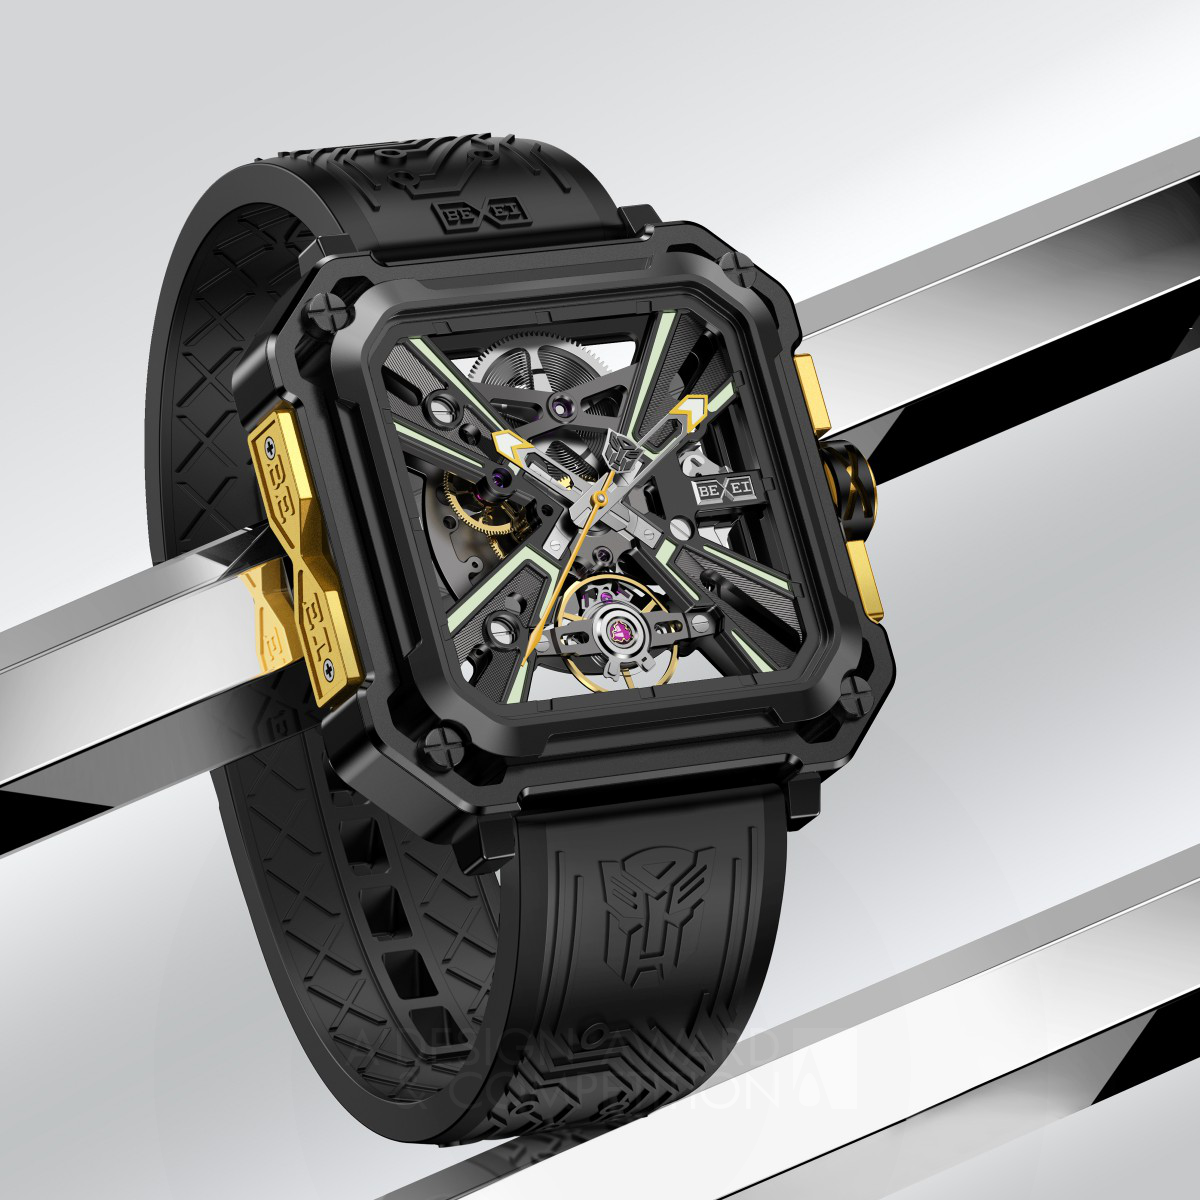 X Series Watch by Shengliang Lee Golden Watch Design Award Winner 2023 